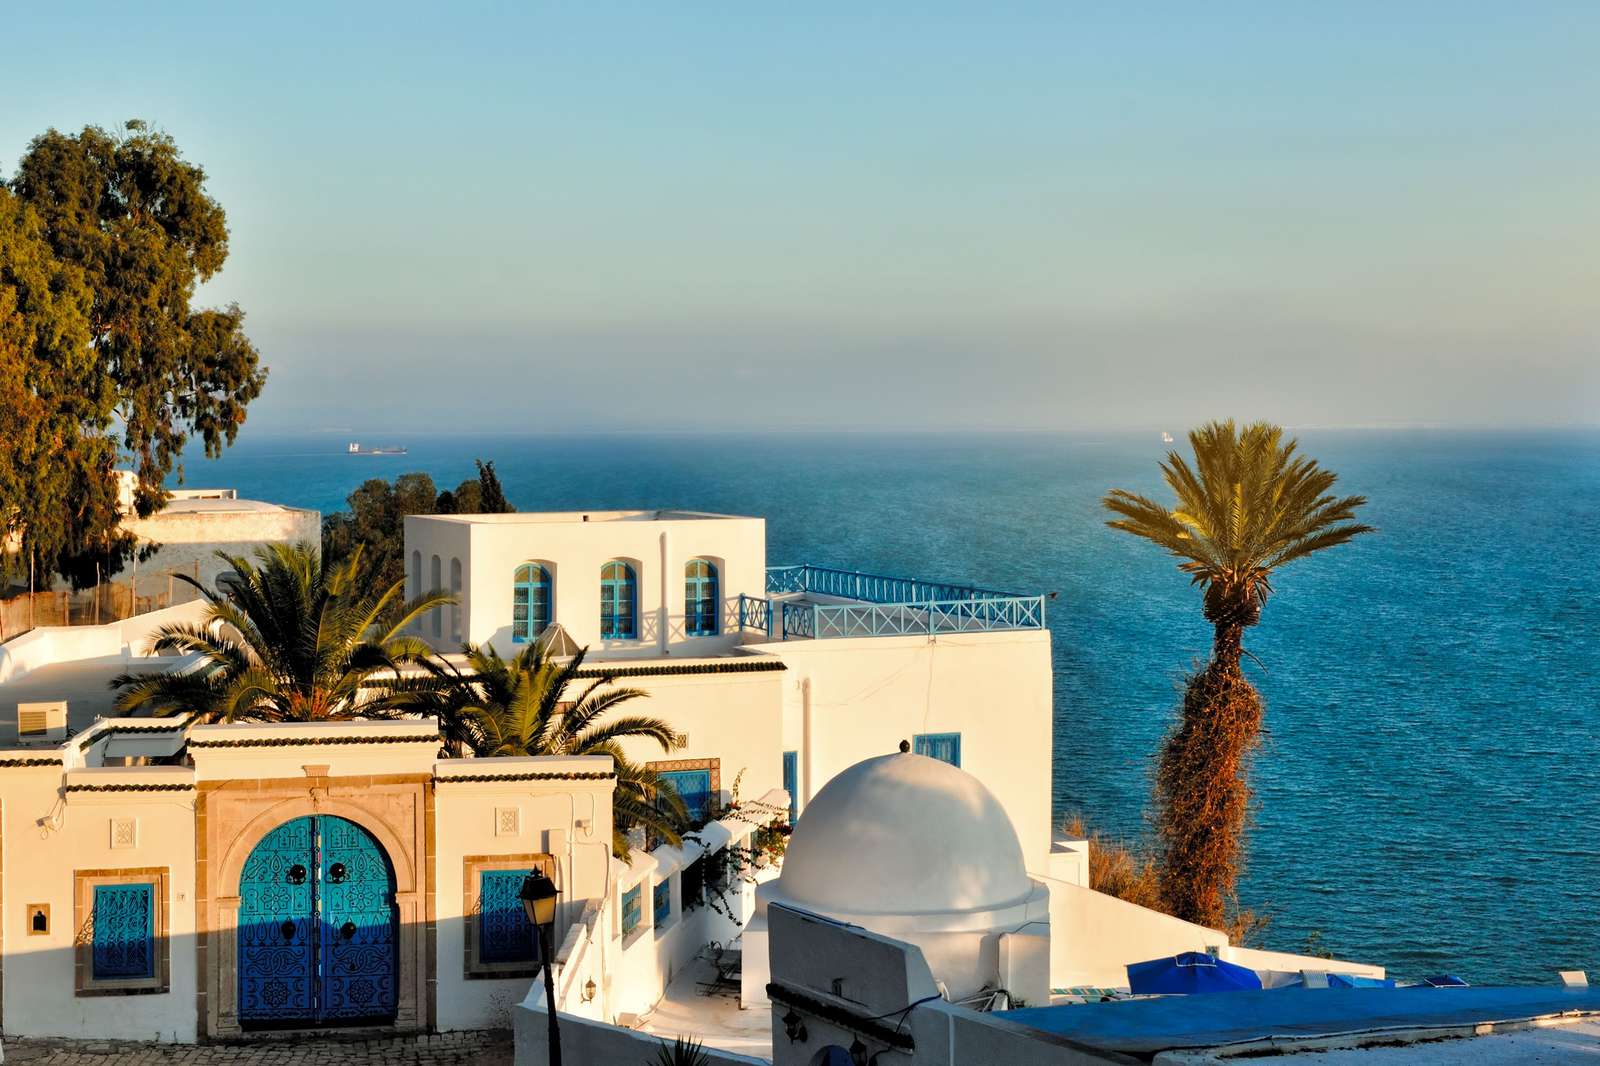 Tunis hlavní město Tuniska v Africe skládačky online